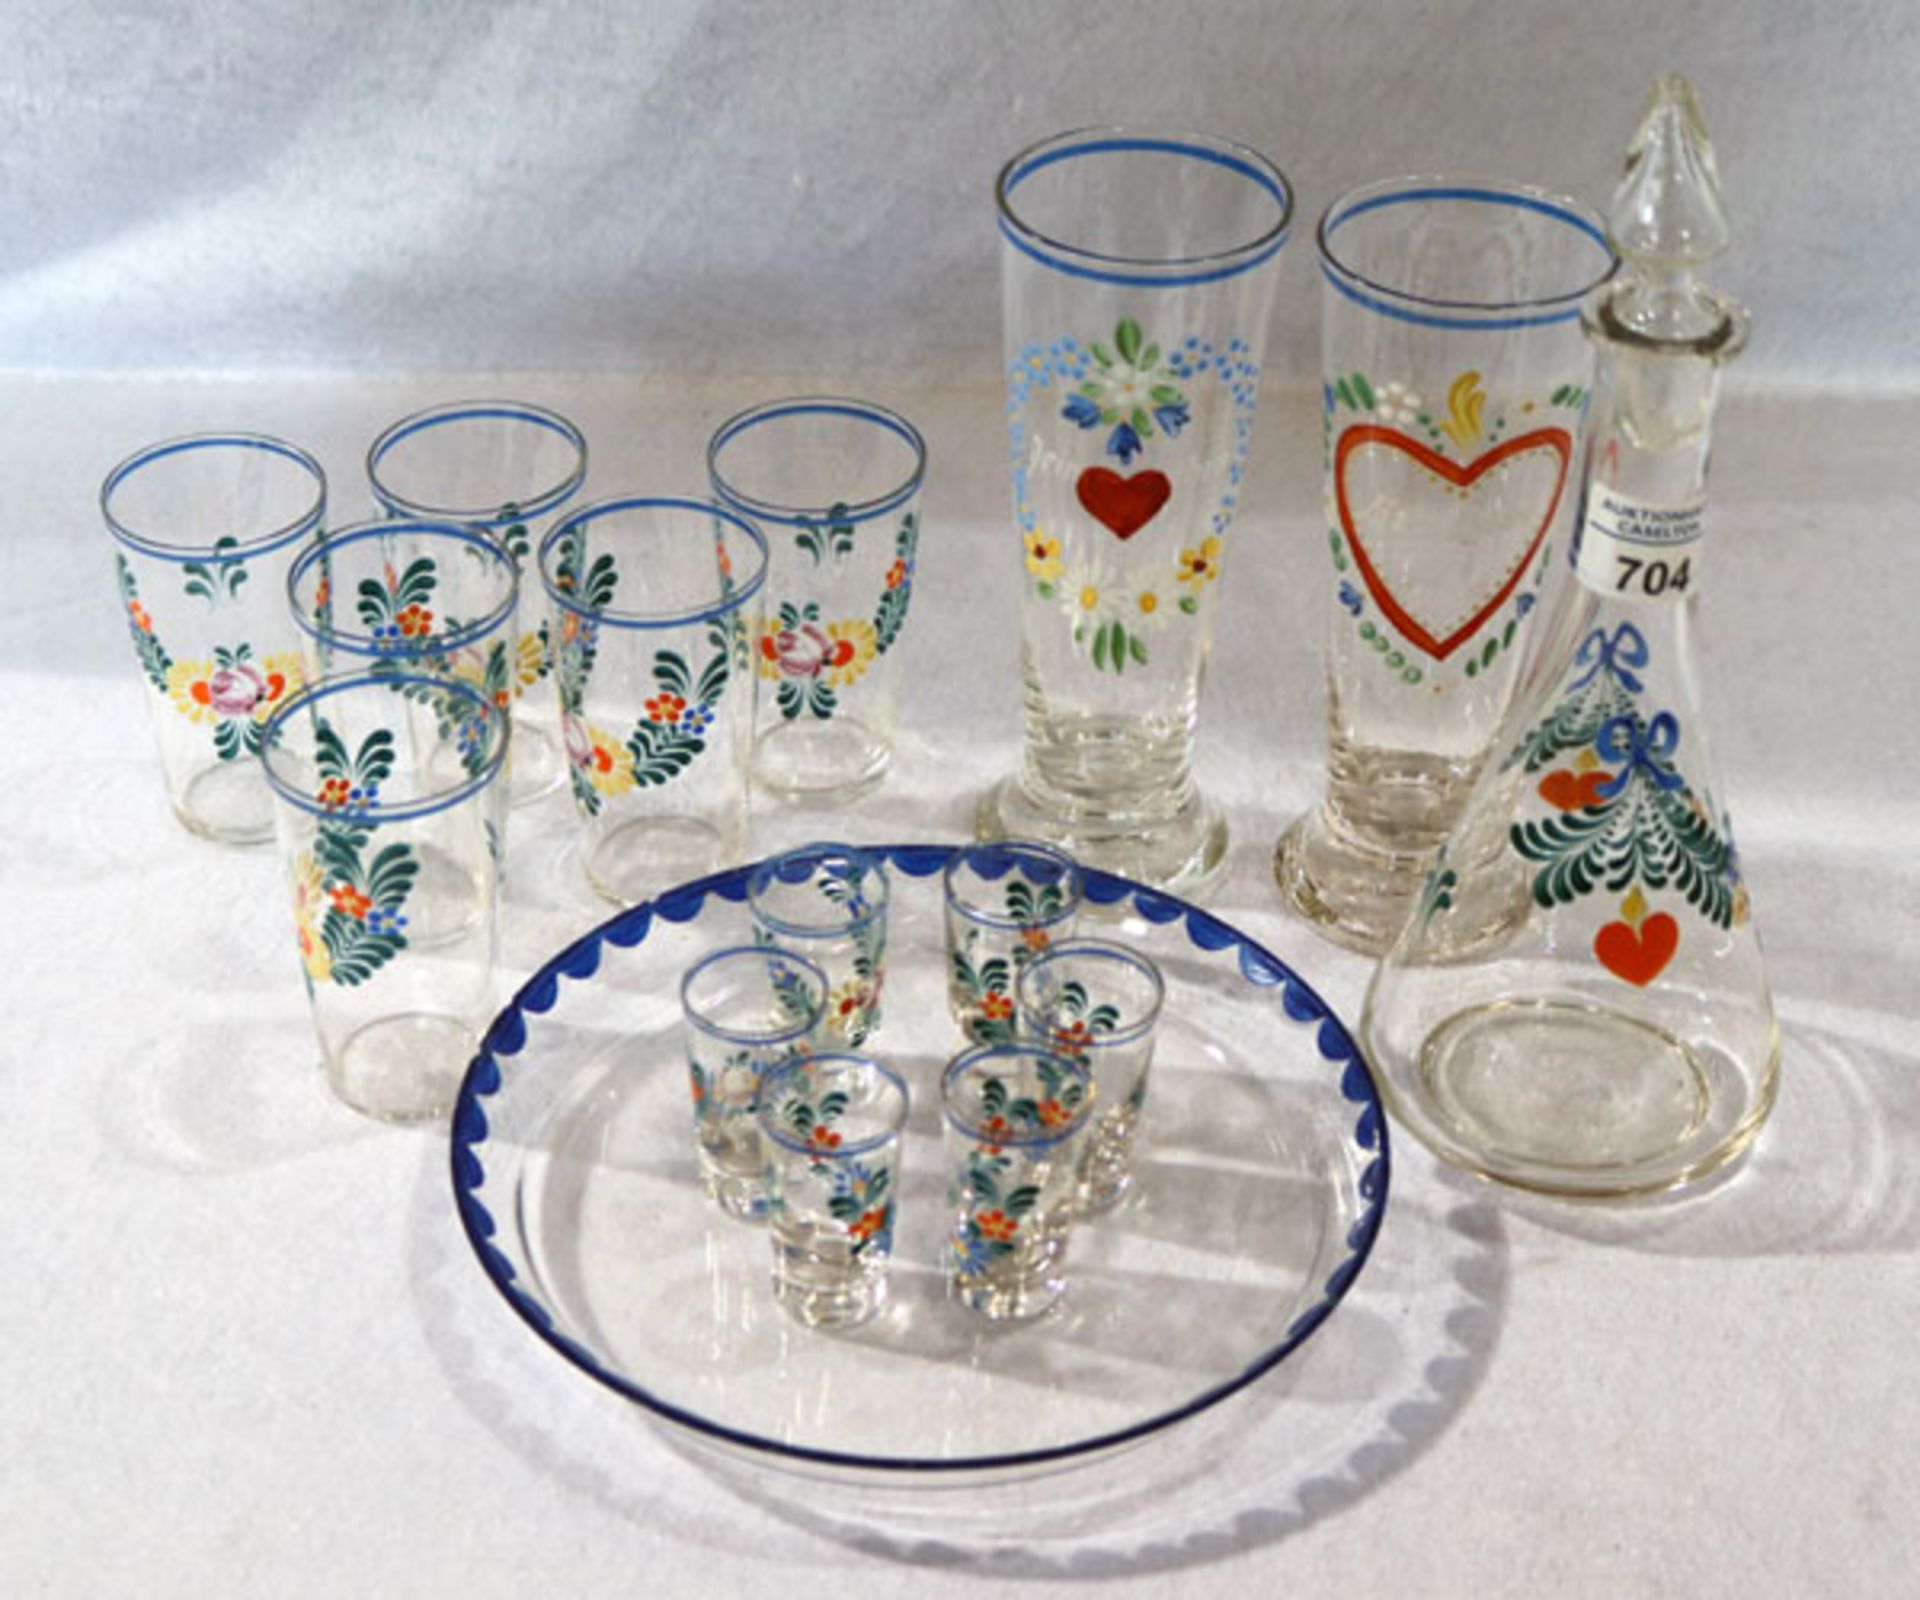 Glas Schnapsset: Karaffe mit 6 Gläser auf Tablett, bemalt mit Blumen- und Herzdekor 'Ein guter